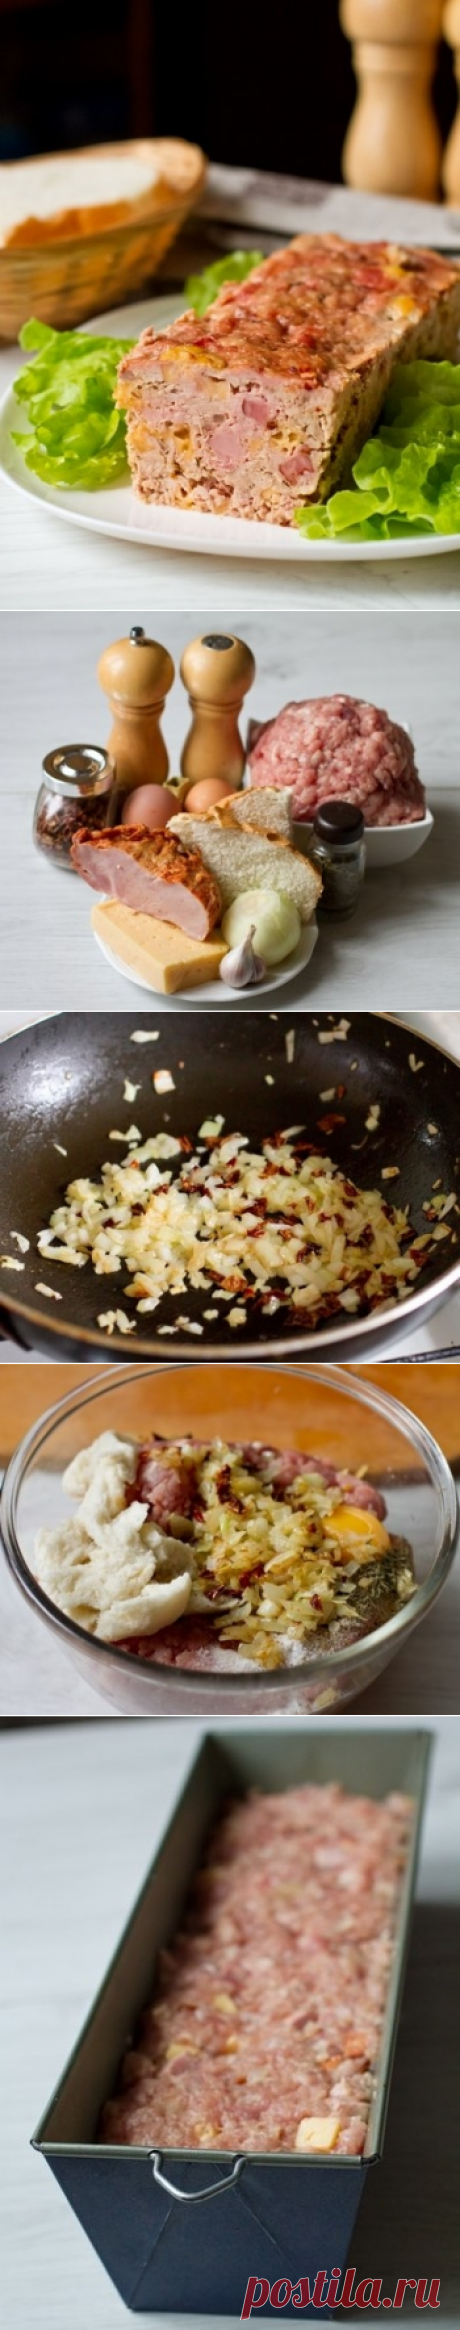 Как приготовить мясной рулет с сыром и ветчиной - рецепт, ингридиенты и фотографии